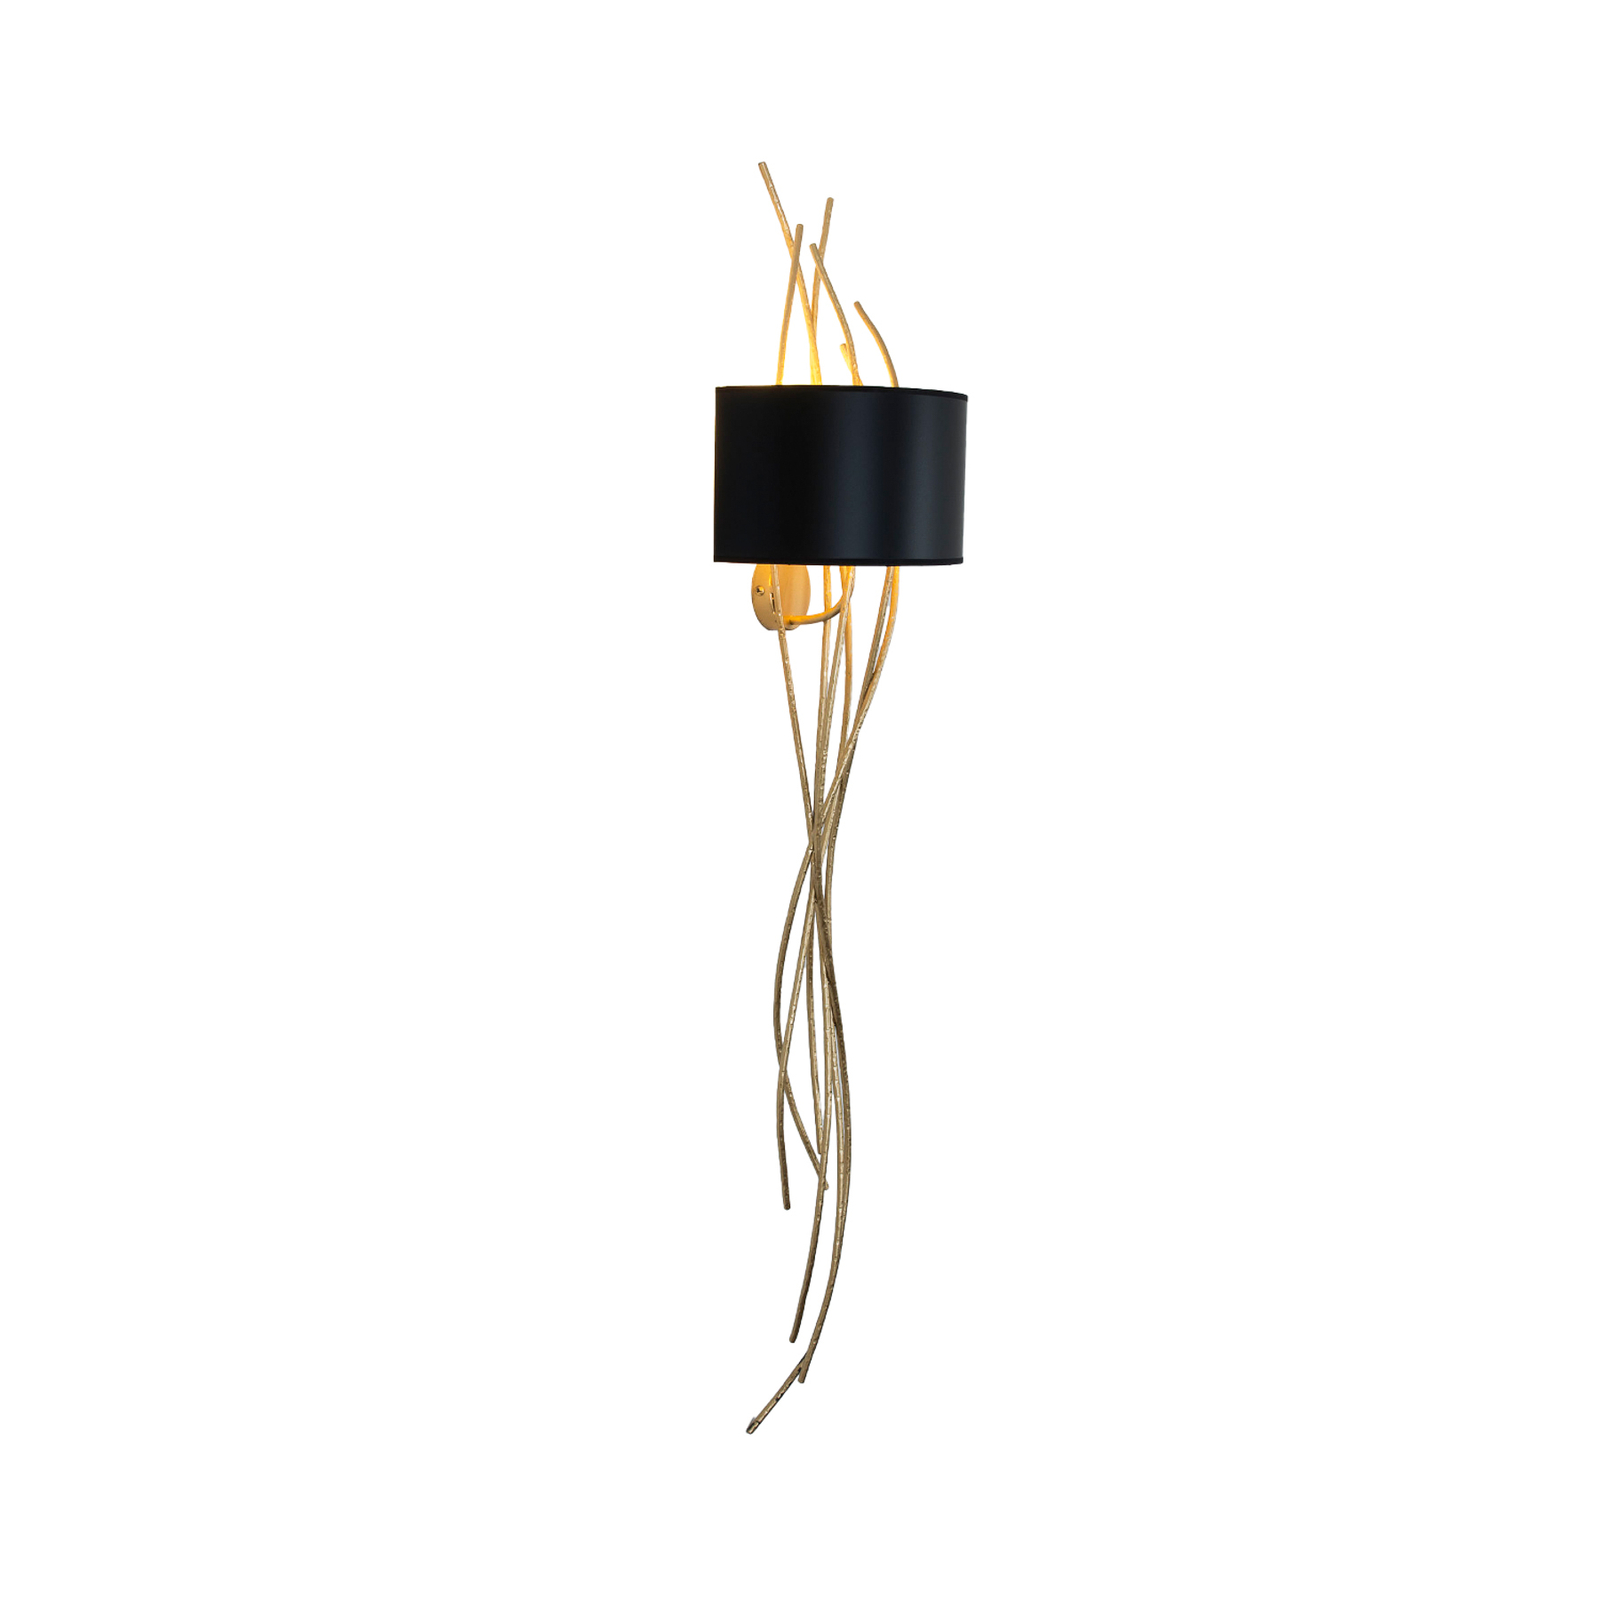 Elba lungo wandlamp, goud/zwart, hoogte 144 cm, ijzer